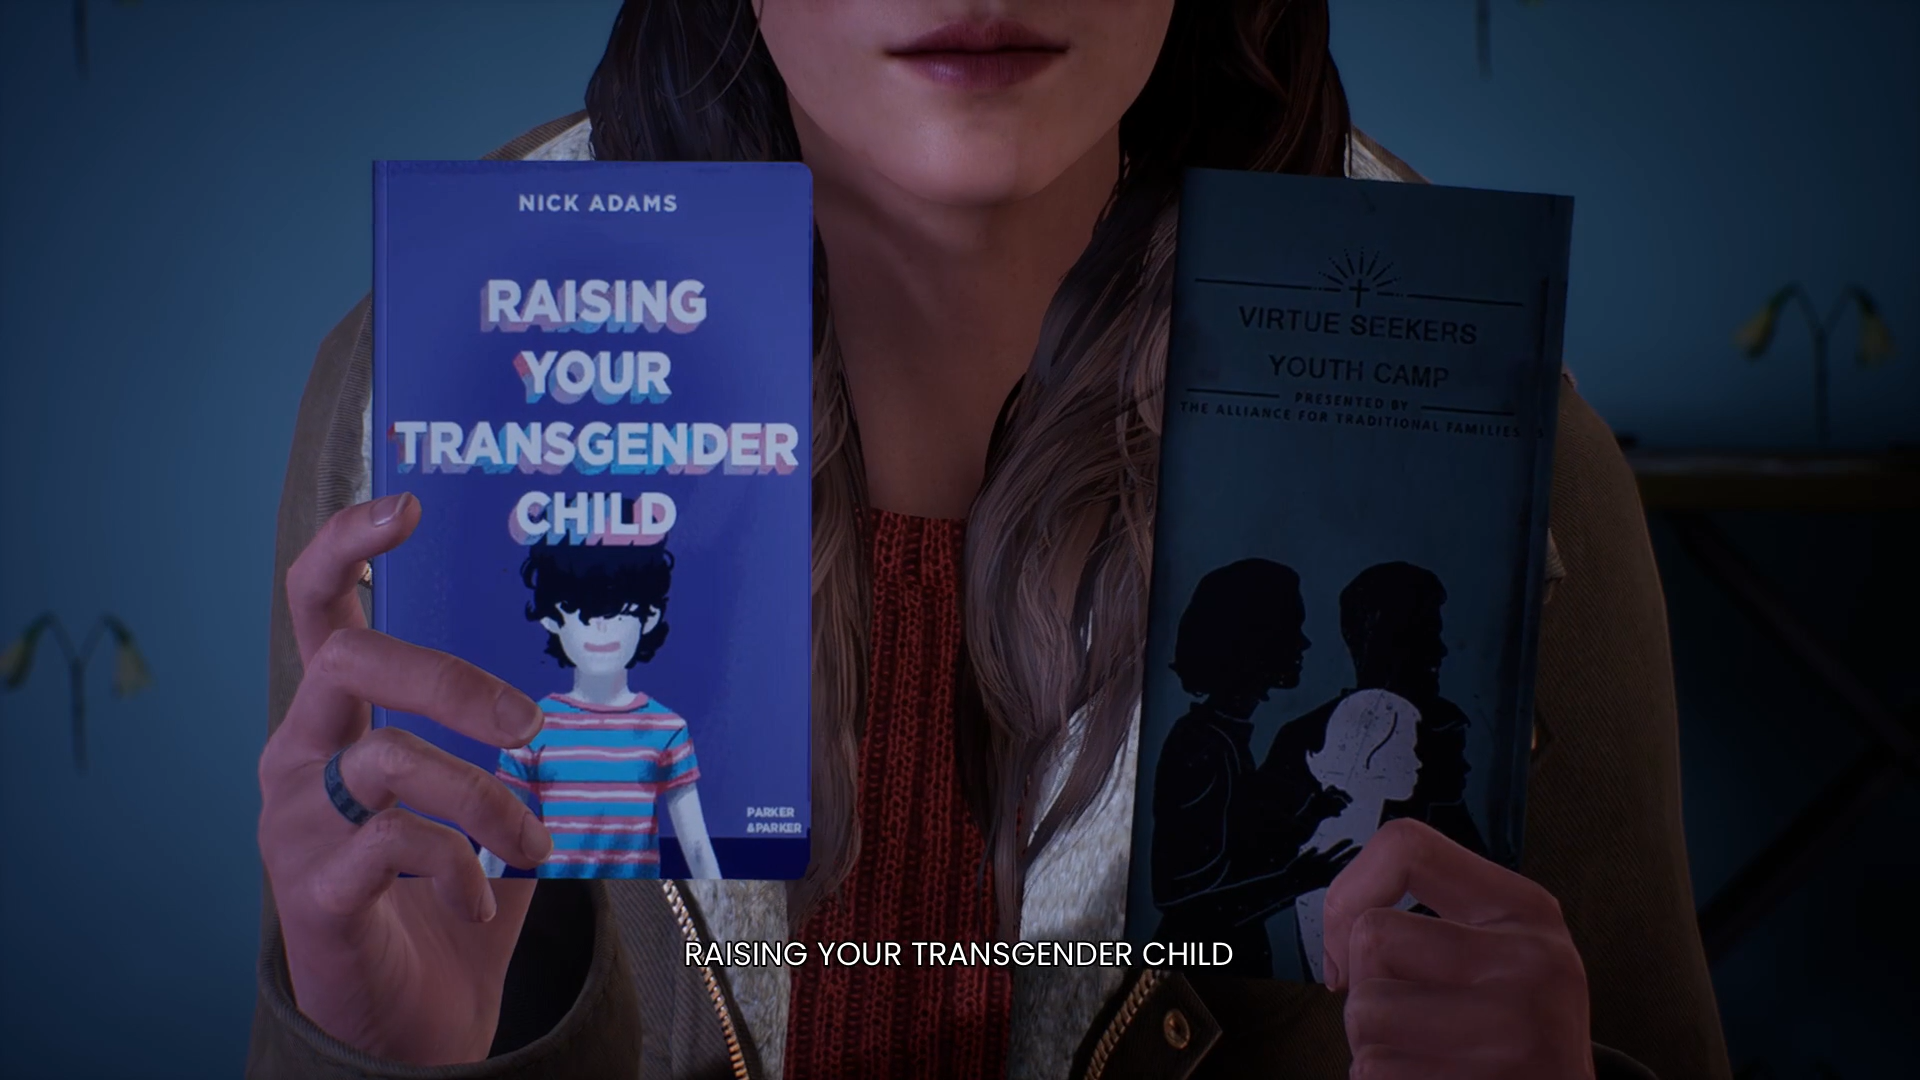 Aly在母親房間內發現了扶養跨性別兒童的育兒書籍。看似反同的母親為什麼會有這種書籍？衝突構建良好，玩家有動力繼續探索下去。